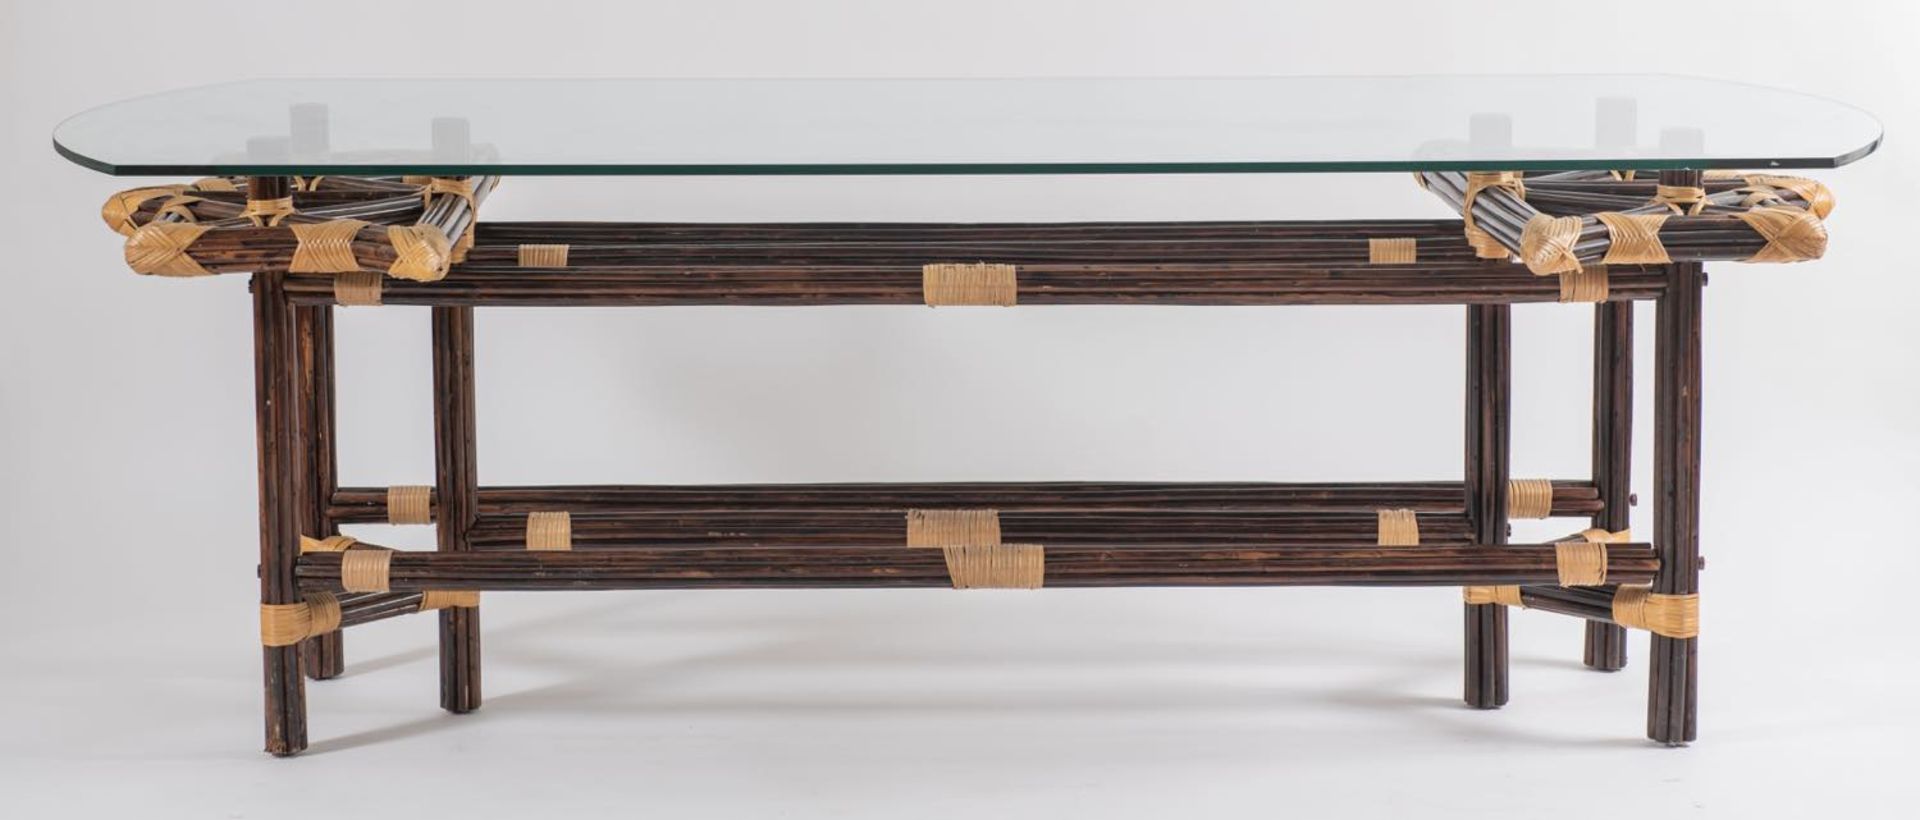 Tavolo in bambù con piano in cristallo, Italia, Anni ‘70/’80.Legature in cuoio chiaro, piano